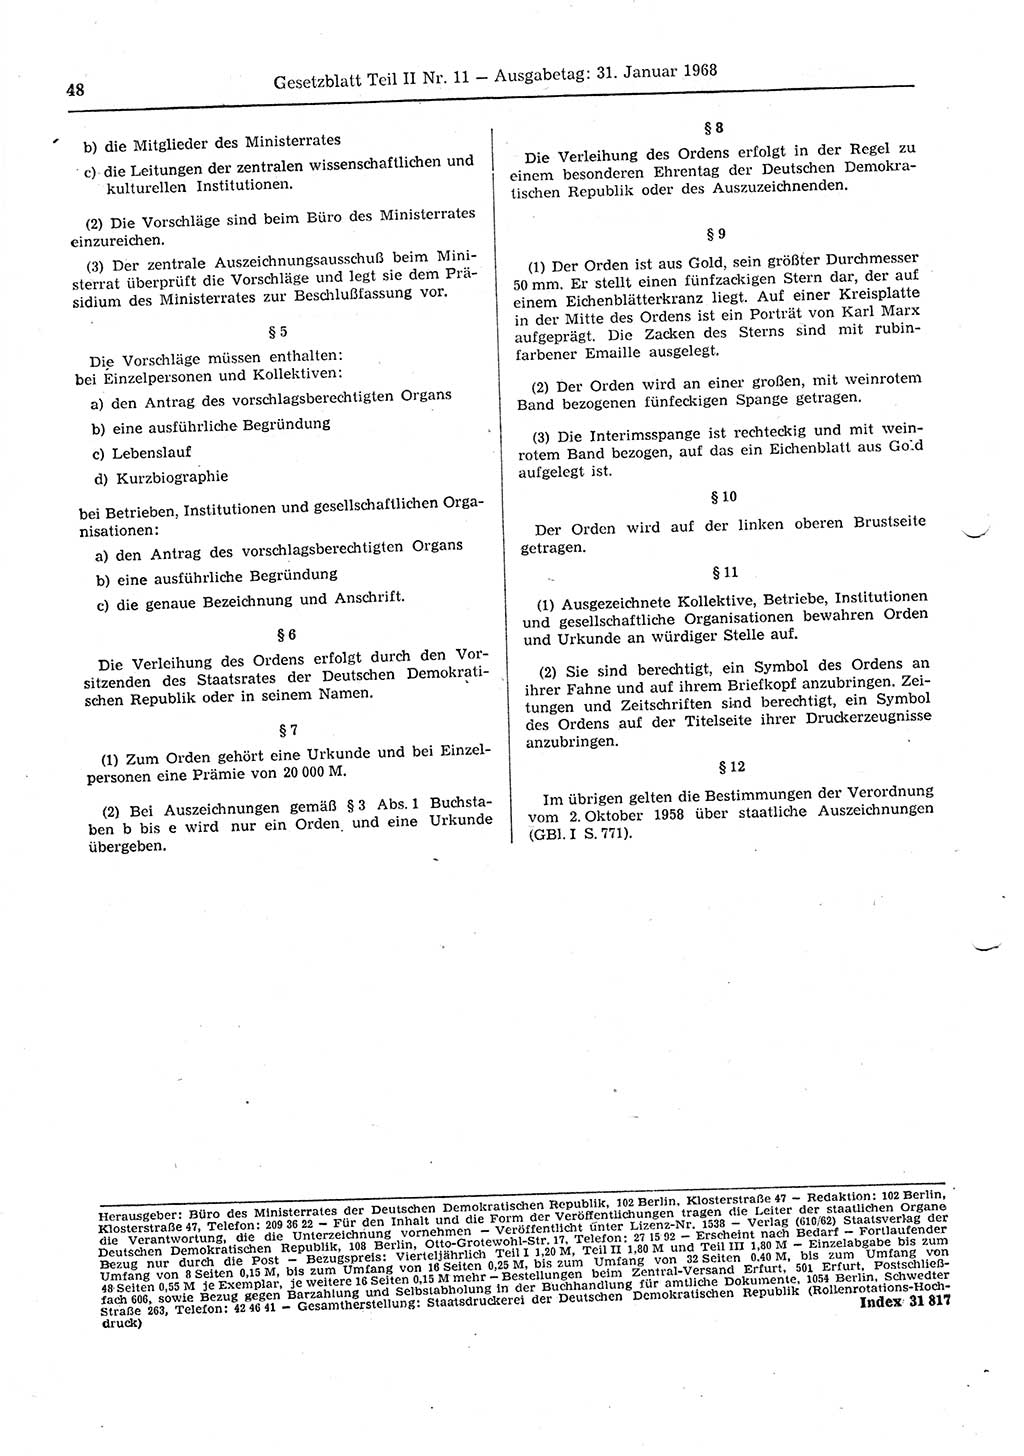 Gesetzblatt (GBl.) der Deutschen Demokratischen Republik (DDR) Teil ⅠⅠ 1968, Seite 48 (GBl. DDR ⅠⅠ 1968, S. 48)